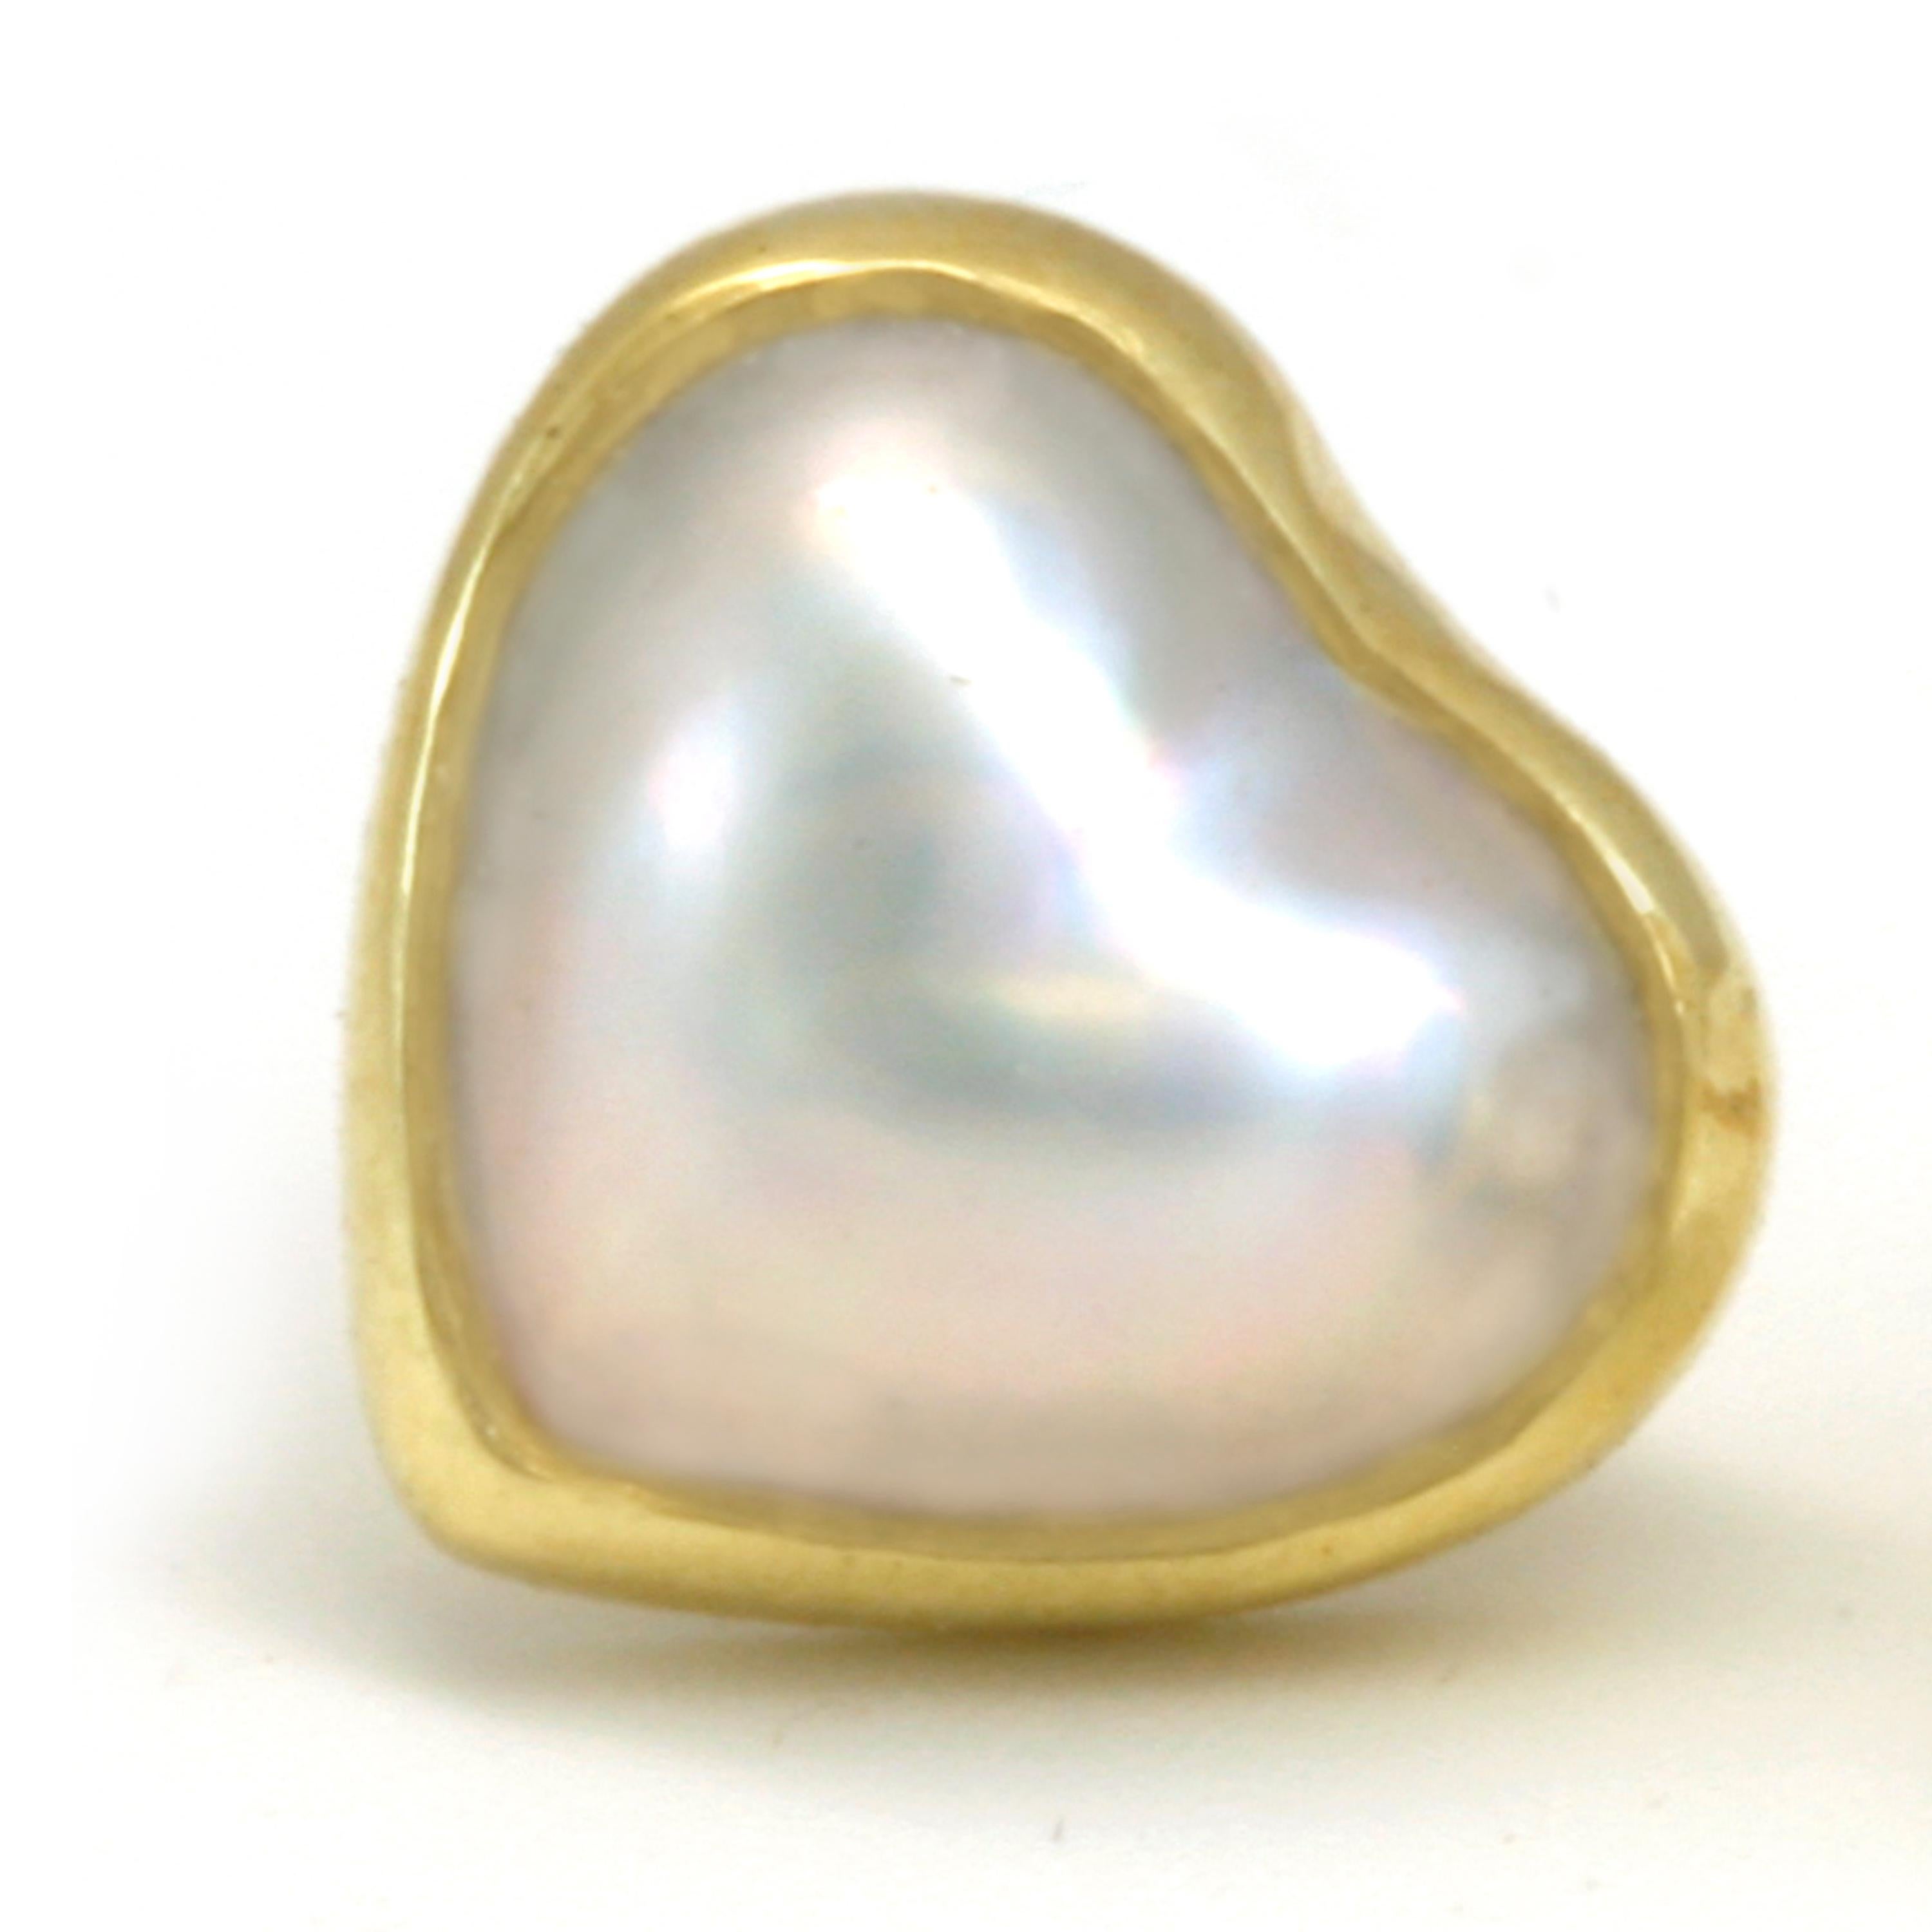 heart shaped pearl earrings